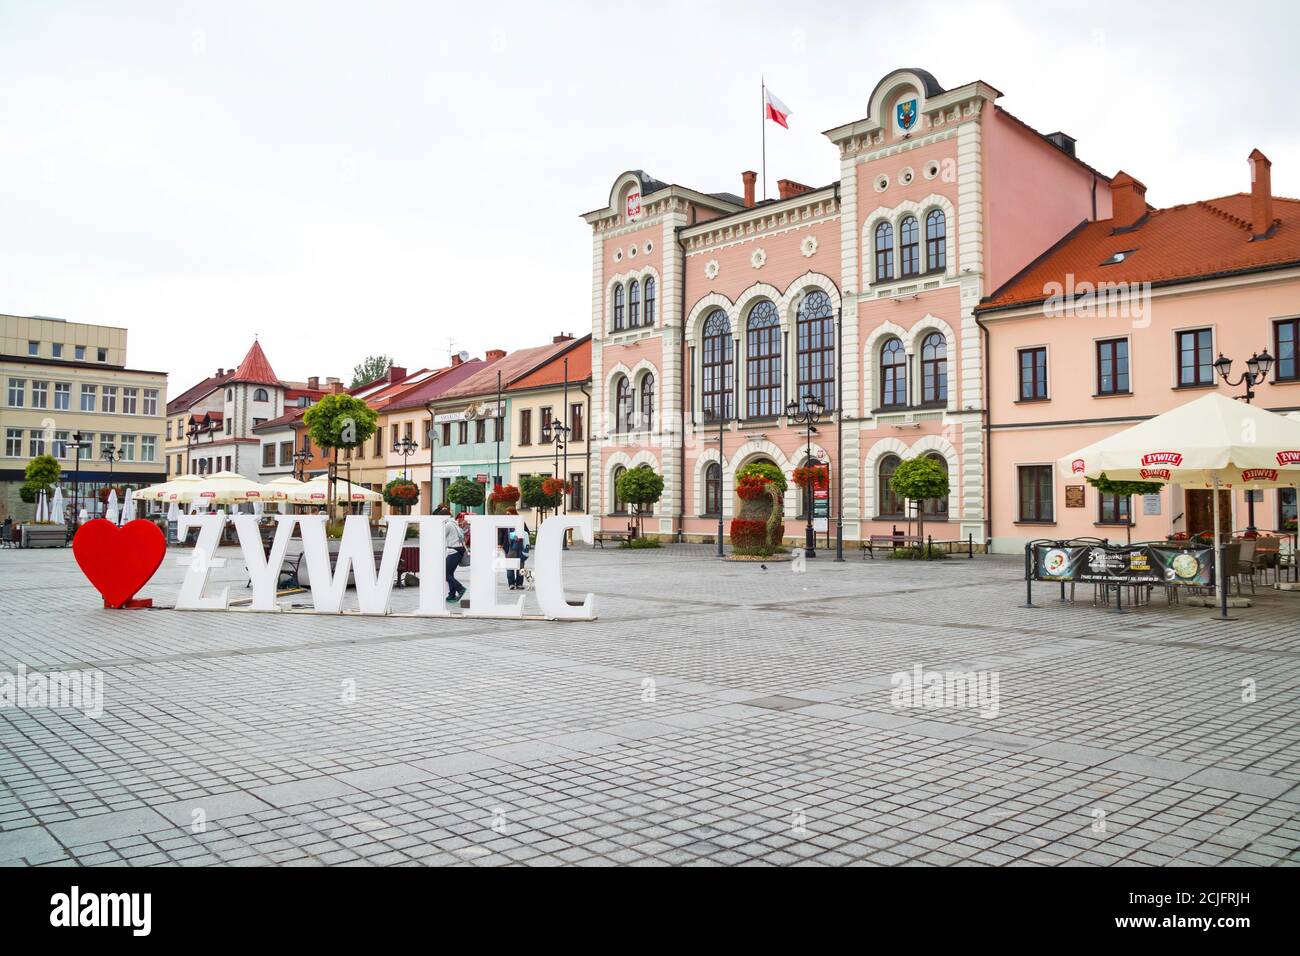 ZYWIEC, POLONIA - 12 DE JULIO de 2020: Ayuntamiento junto a la plaza principal del mercado en Zywiec, Polonia. Foto de stock